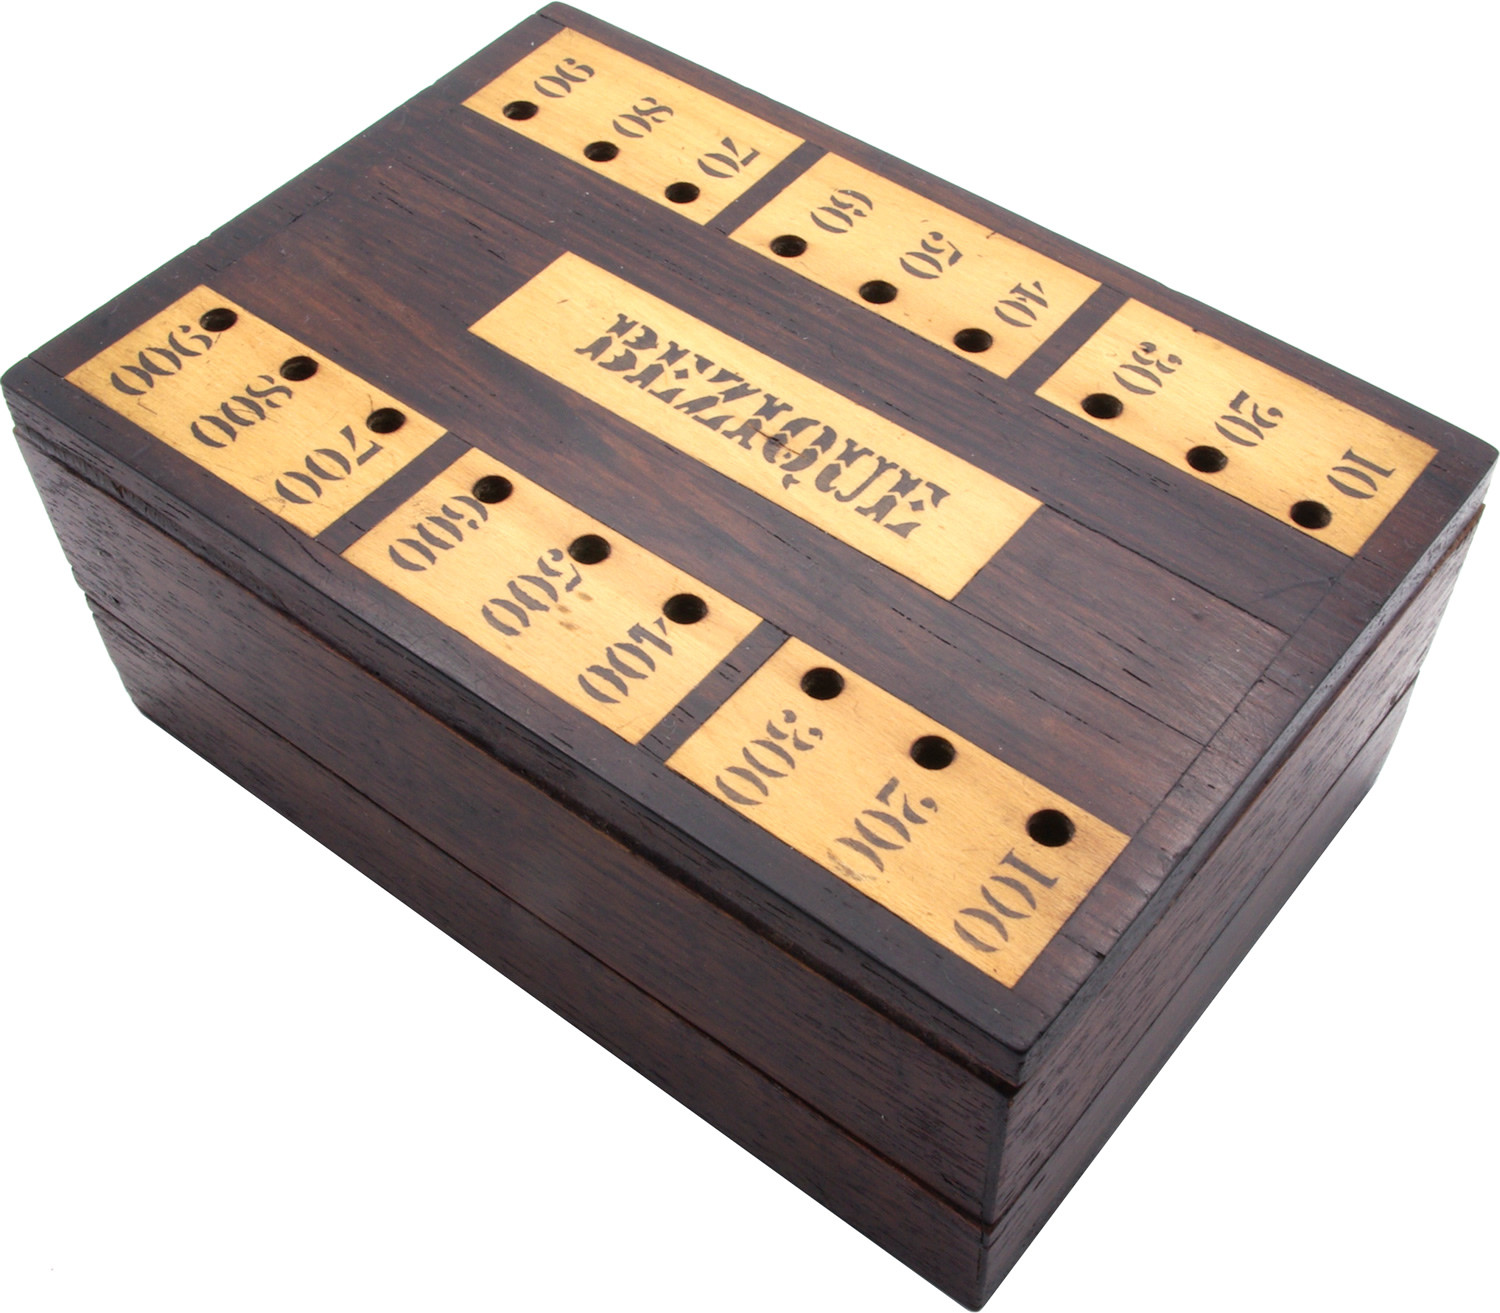 Antique Bezique scoring box